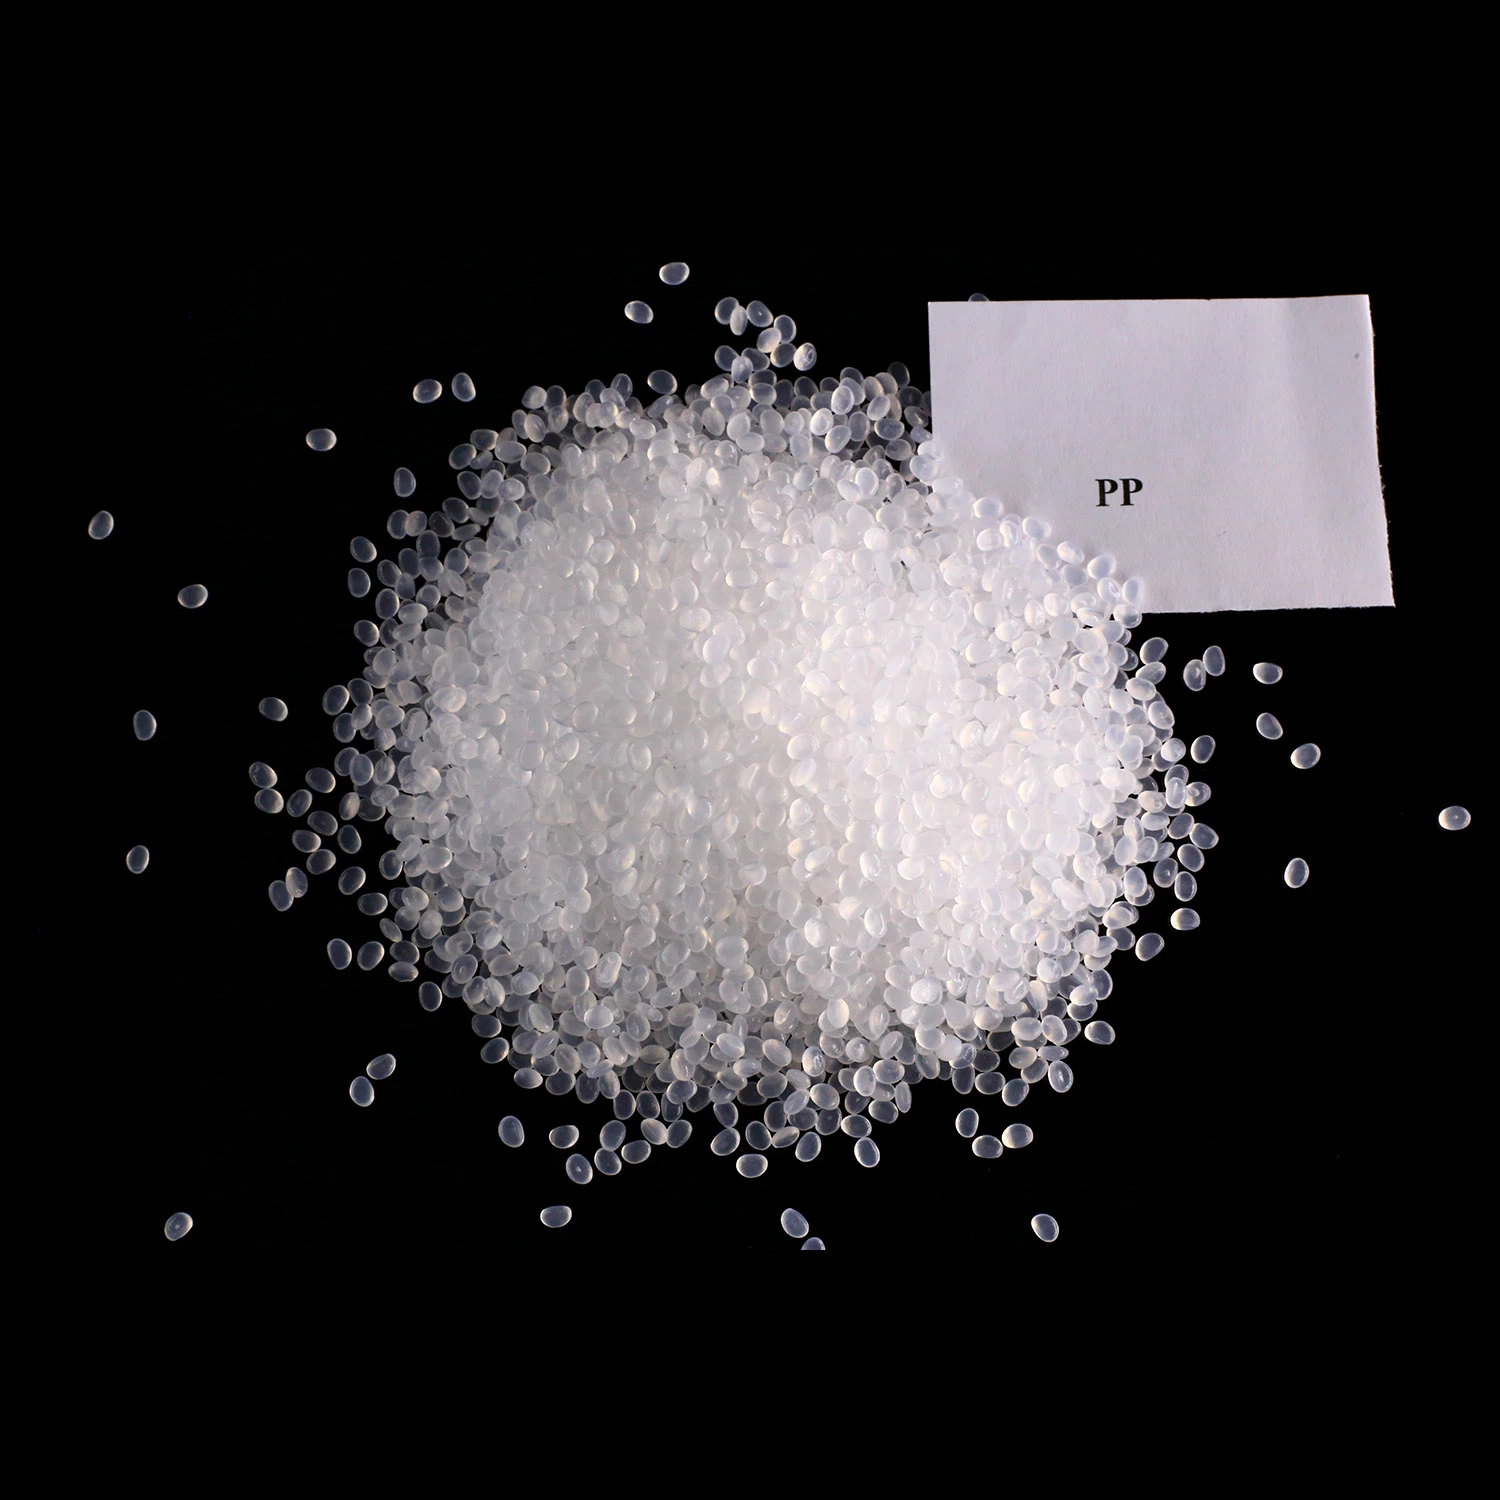 Virgin PP Polypropylene High Quality PP Resin Granules Random Copolymer for Fiber Grade